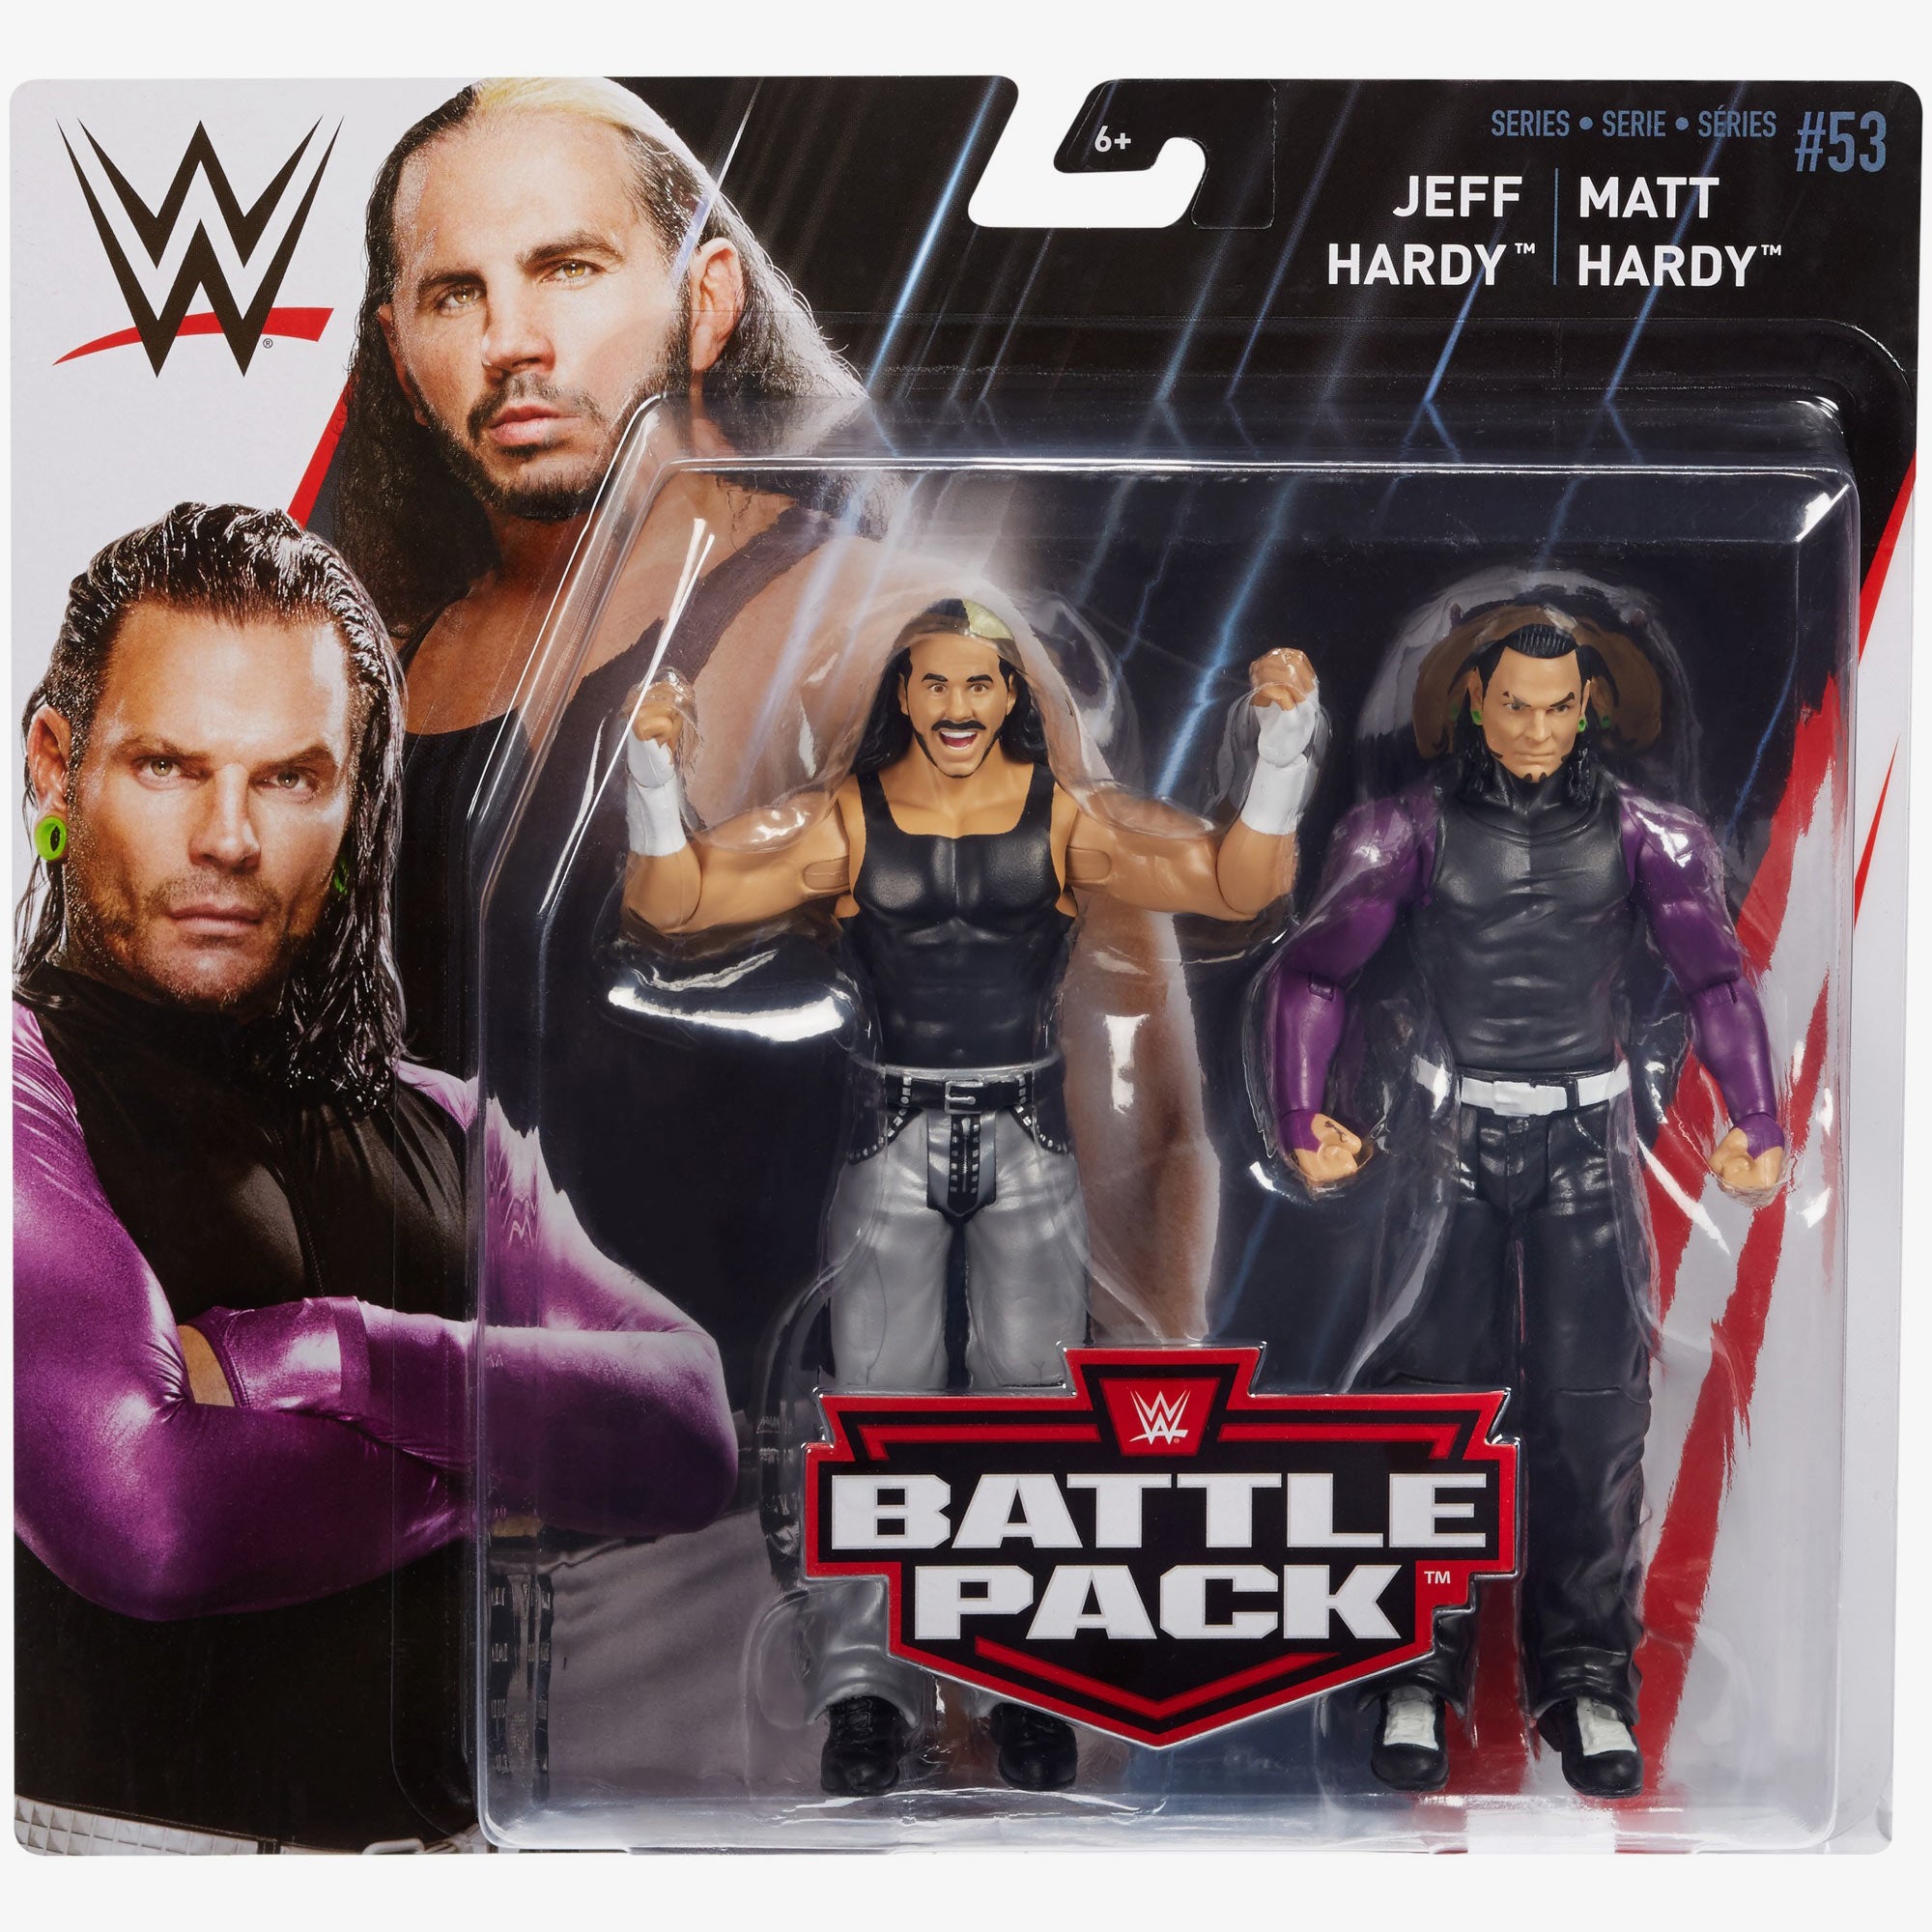 Matt Hardy & Jeff Hardy (The Hardy Boyz) - WWE Battle Pack Series #53